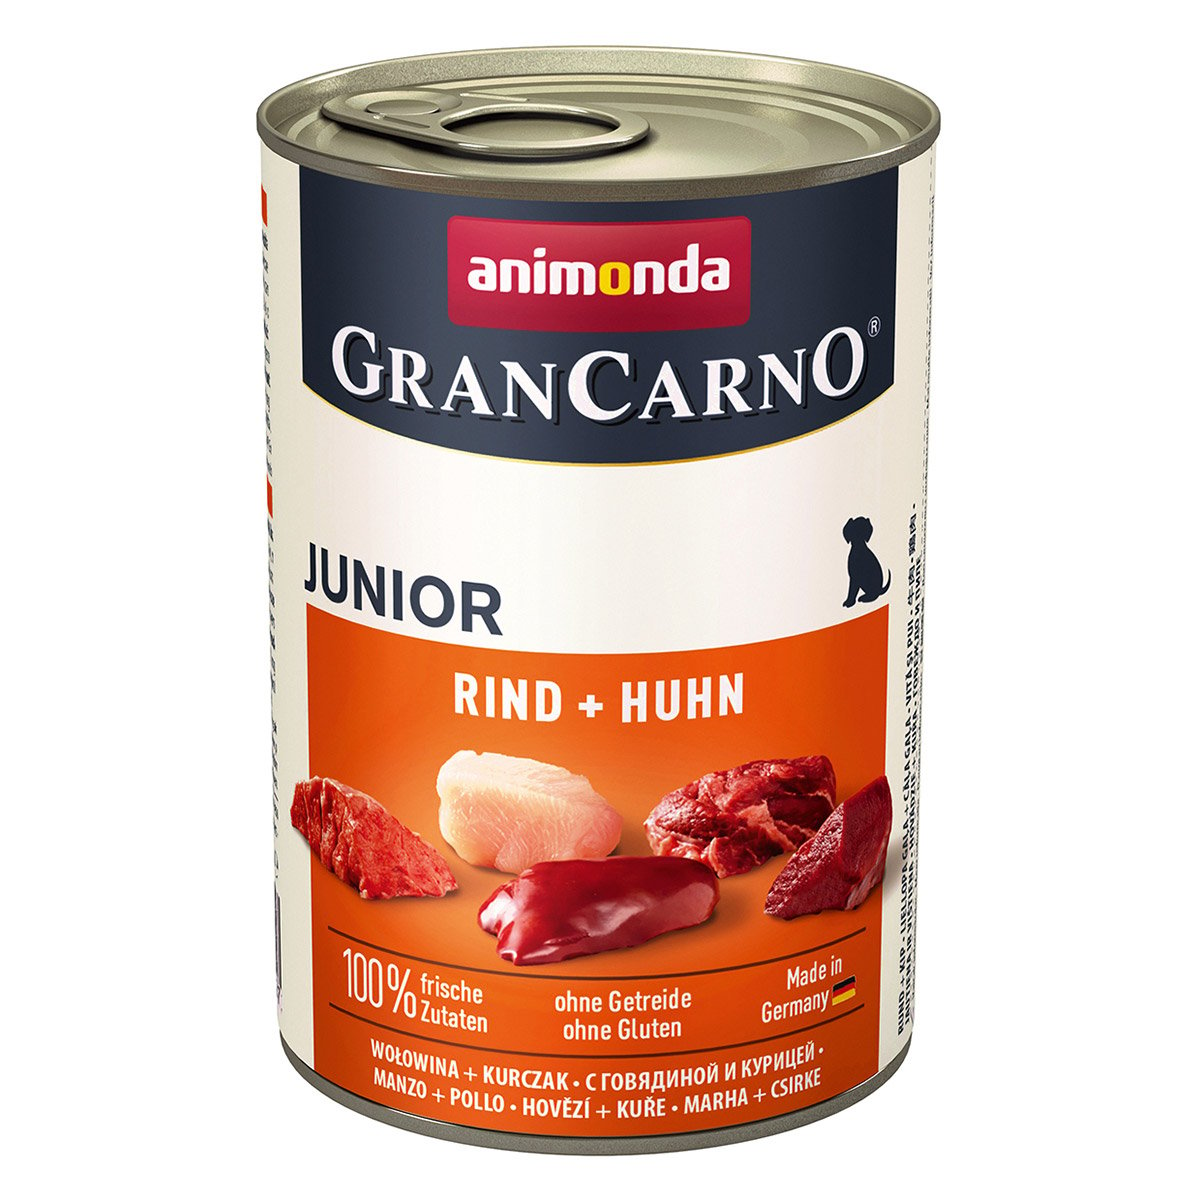 animonda GranCarno Junior Rind und Huhn 6x400g von animonda GranCarno